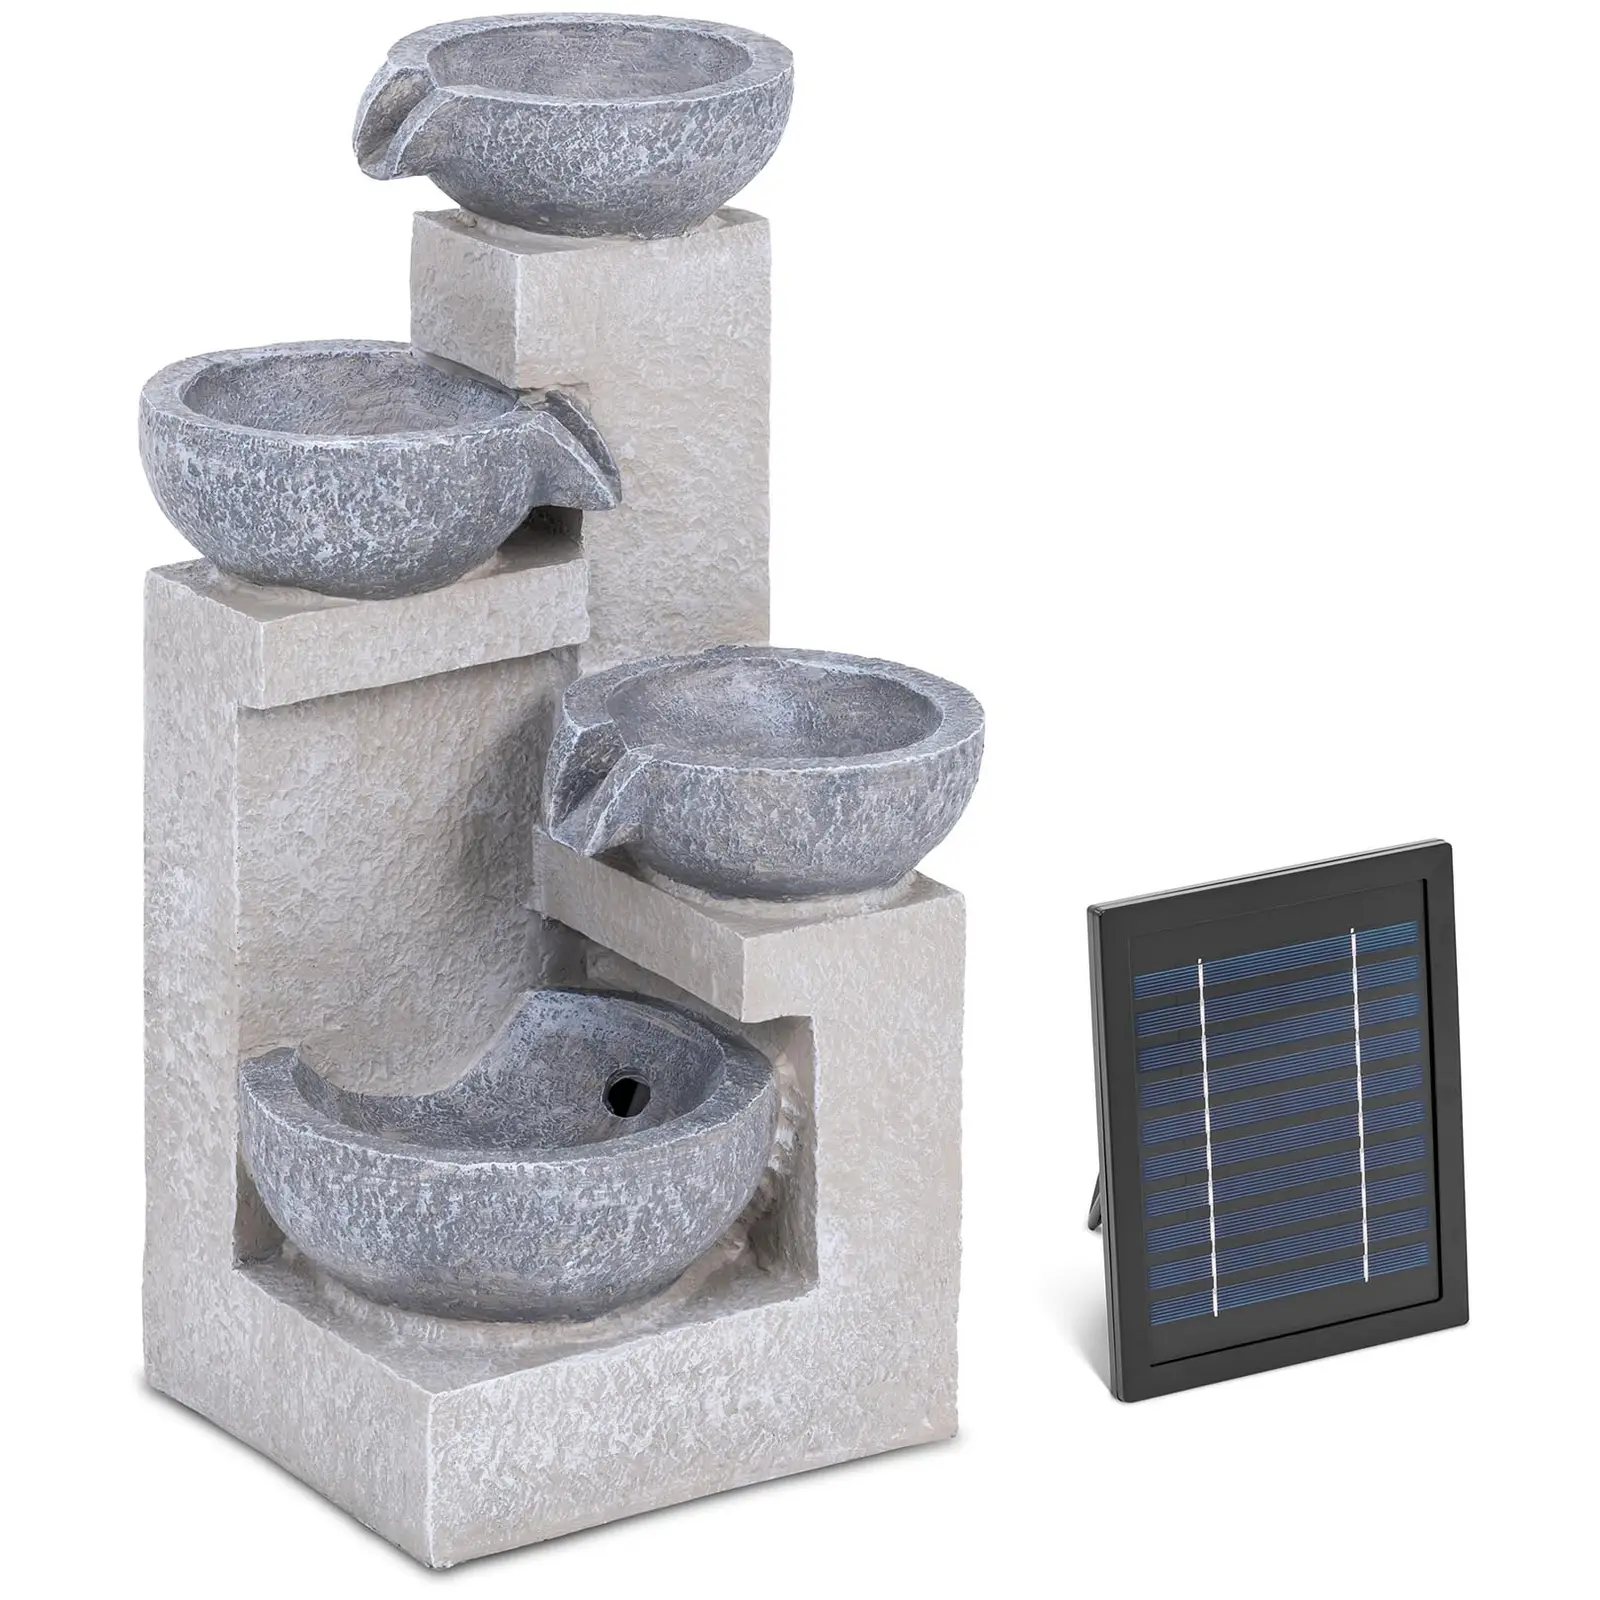 Solárna záhradná fontána - 4 misky na cementových stupienkoch - LED osvetlenie